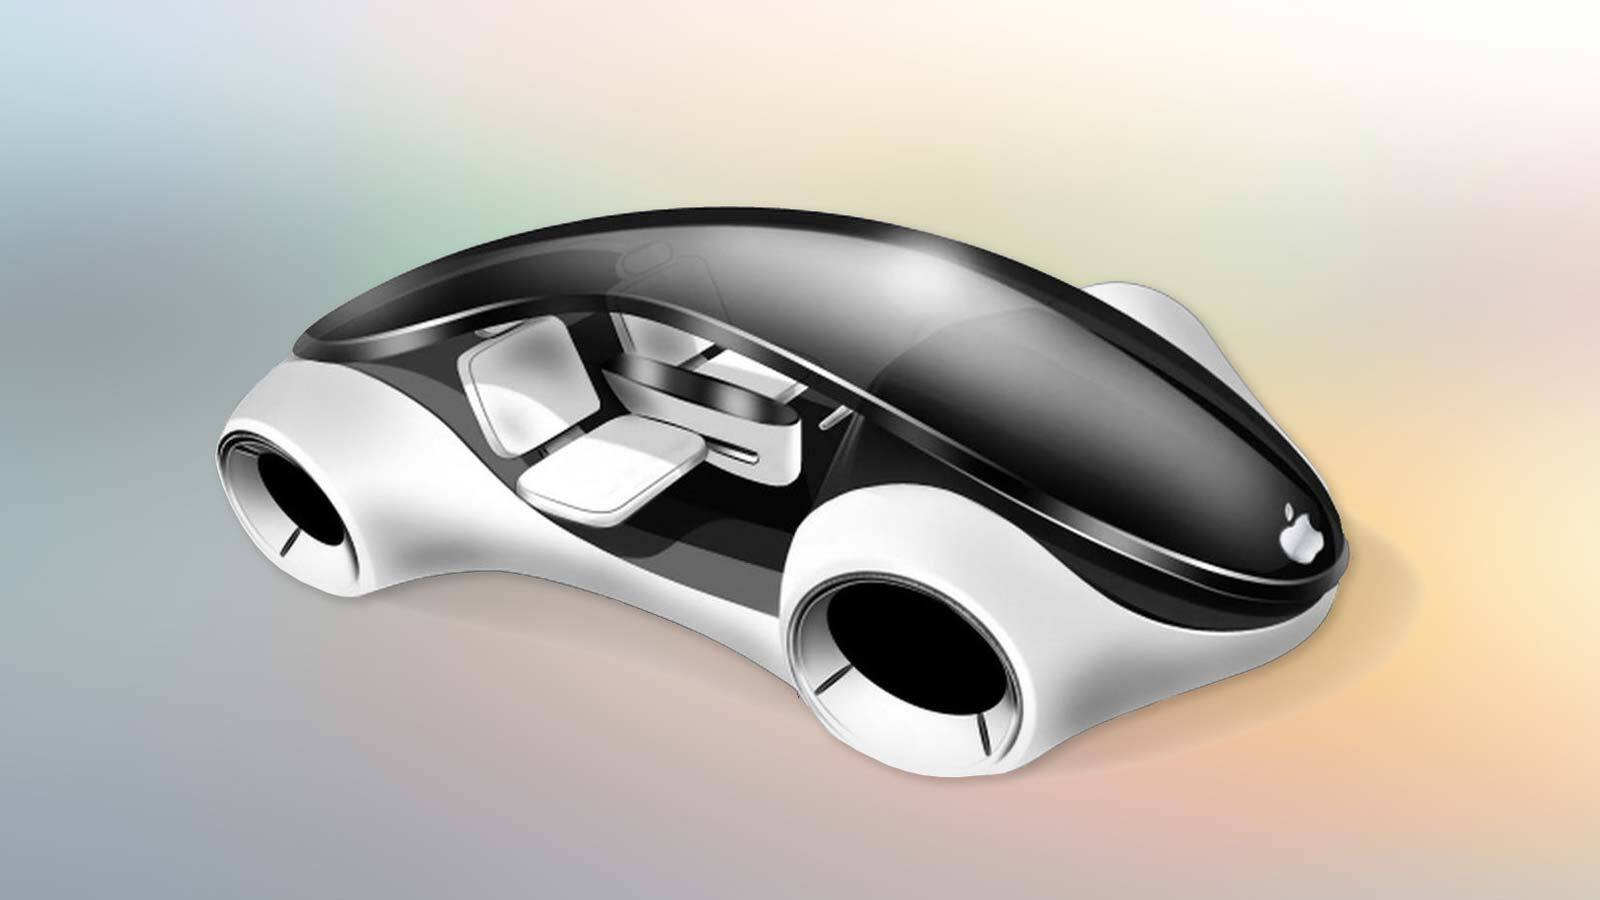 Το Apple Car σηματοδοτεί μια επανάσταση στην οδηγική εμπειρία, ενώνοντας άνεση και ασφάλεια σε ένα εκπληκτικό όραμα.